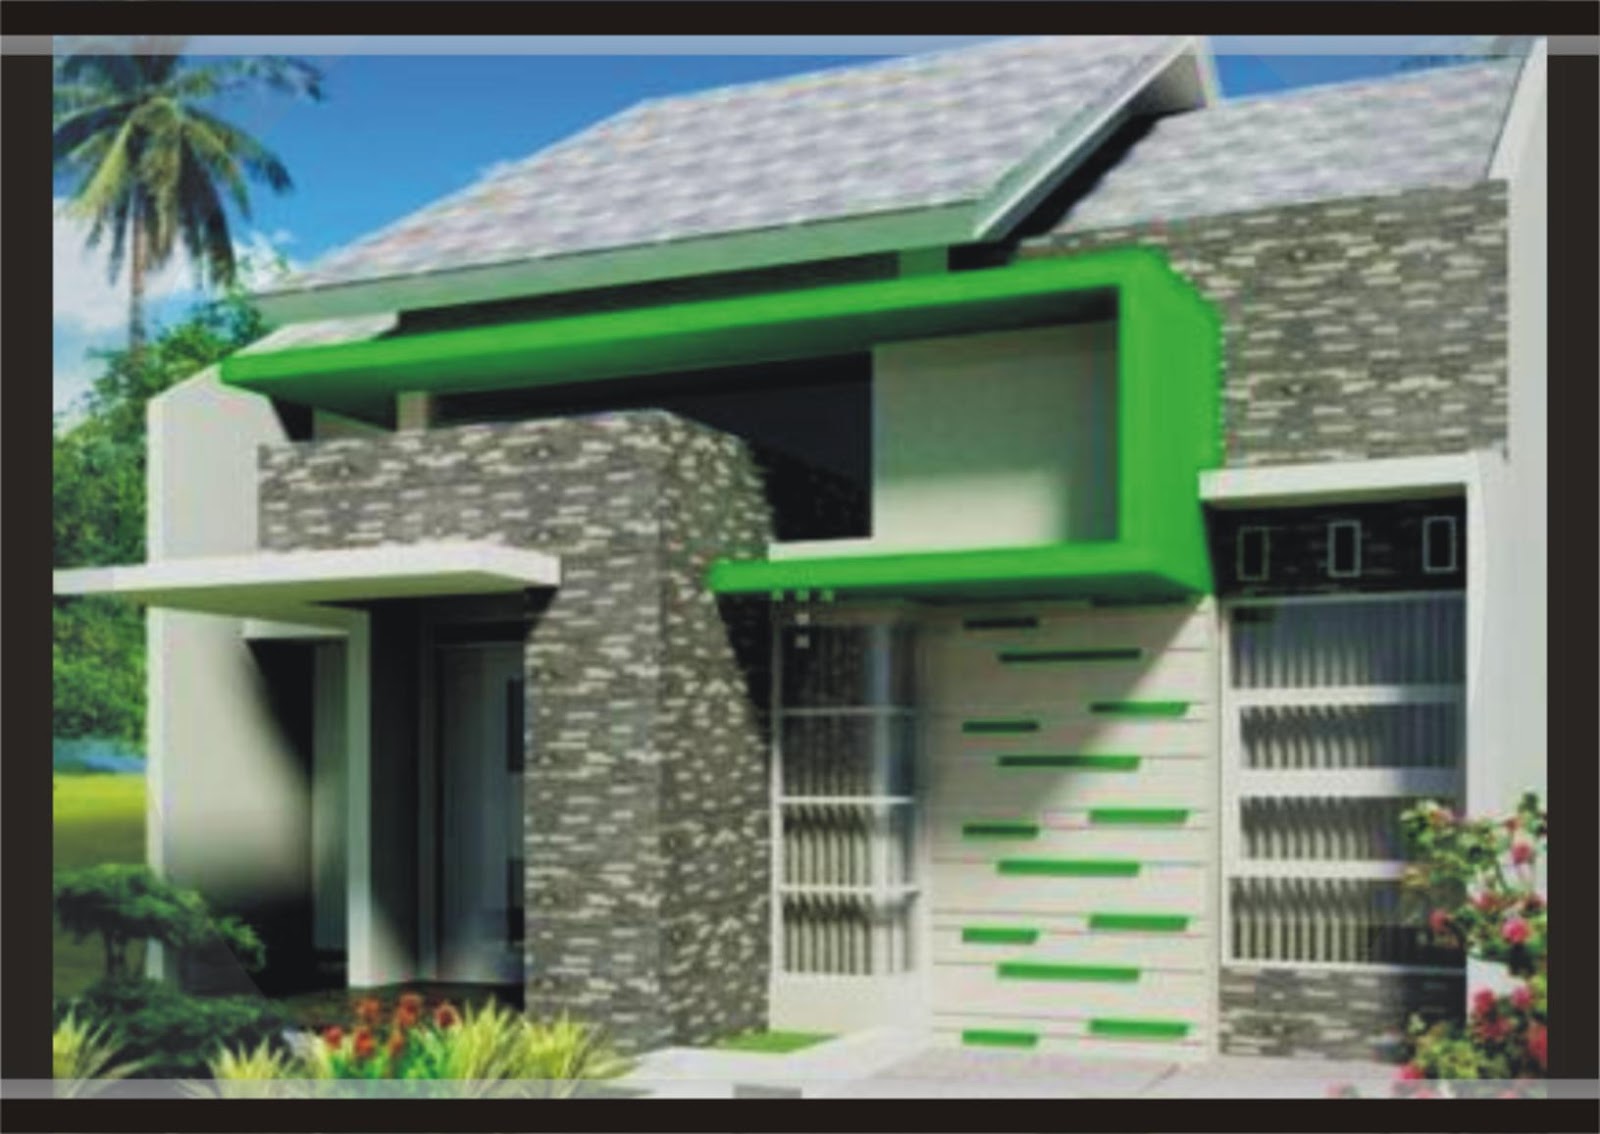 67 Desain Rumah Minimalis Tampak Depan Desain Rumah Minimalis Terbaru